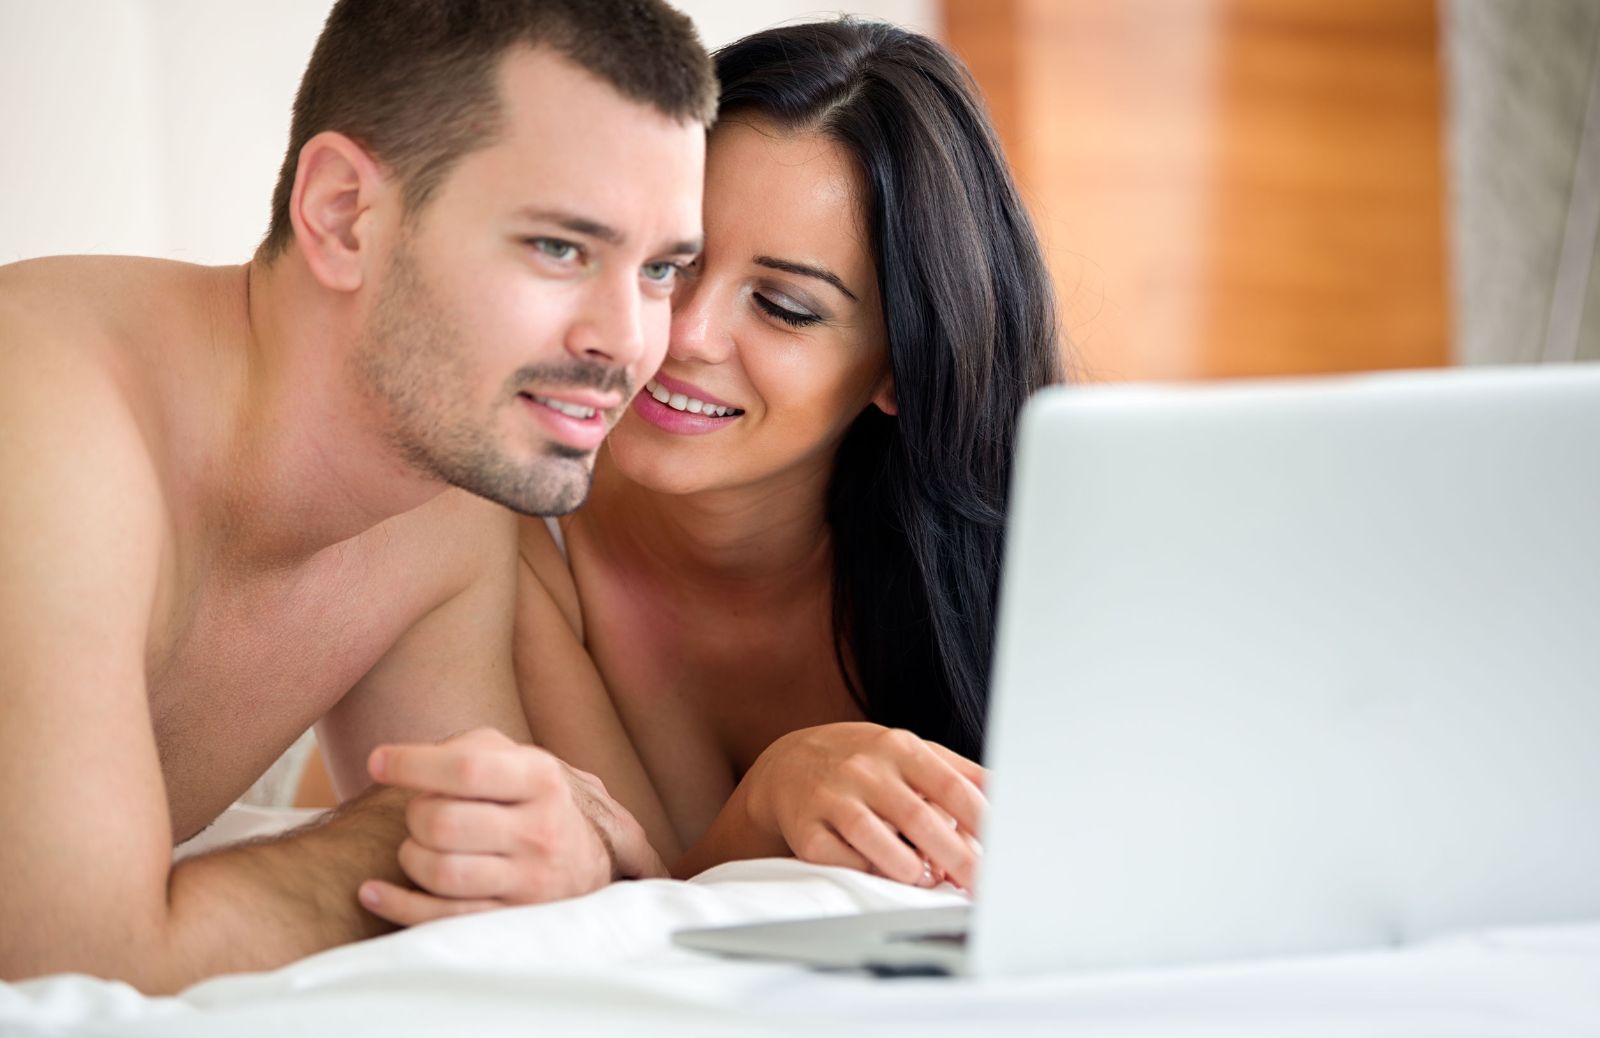 Come guardare film porno col tuo partner (e trarne beneficio) 